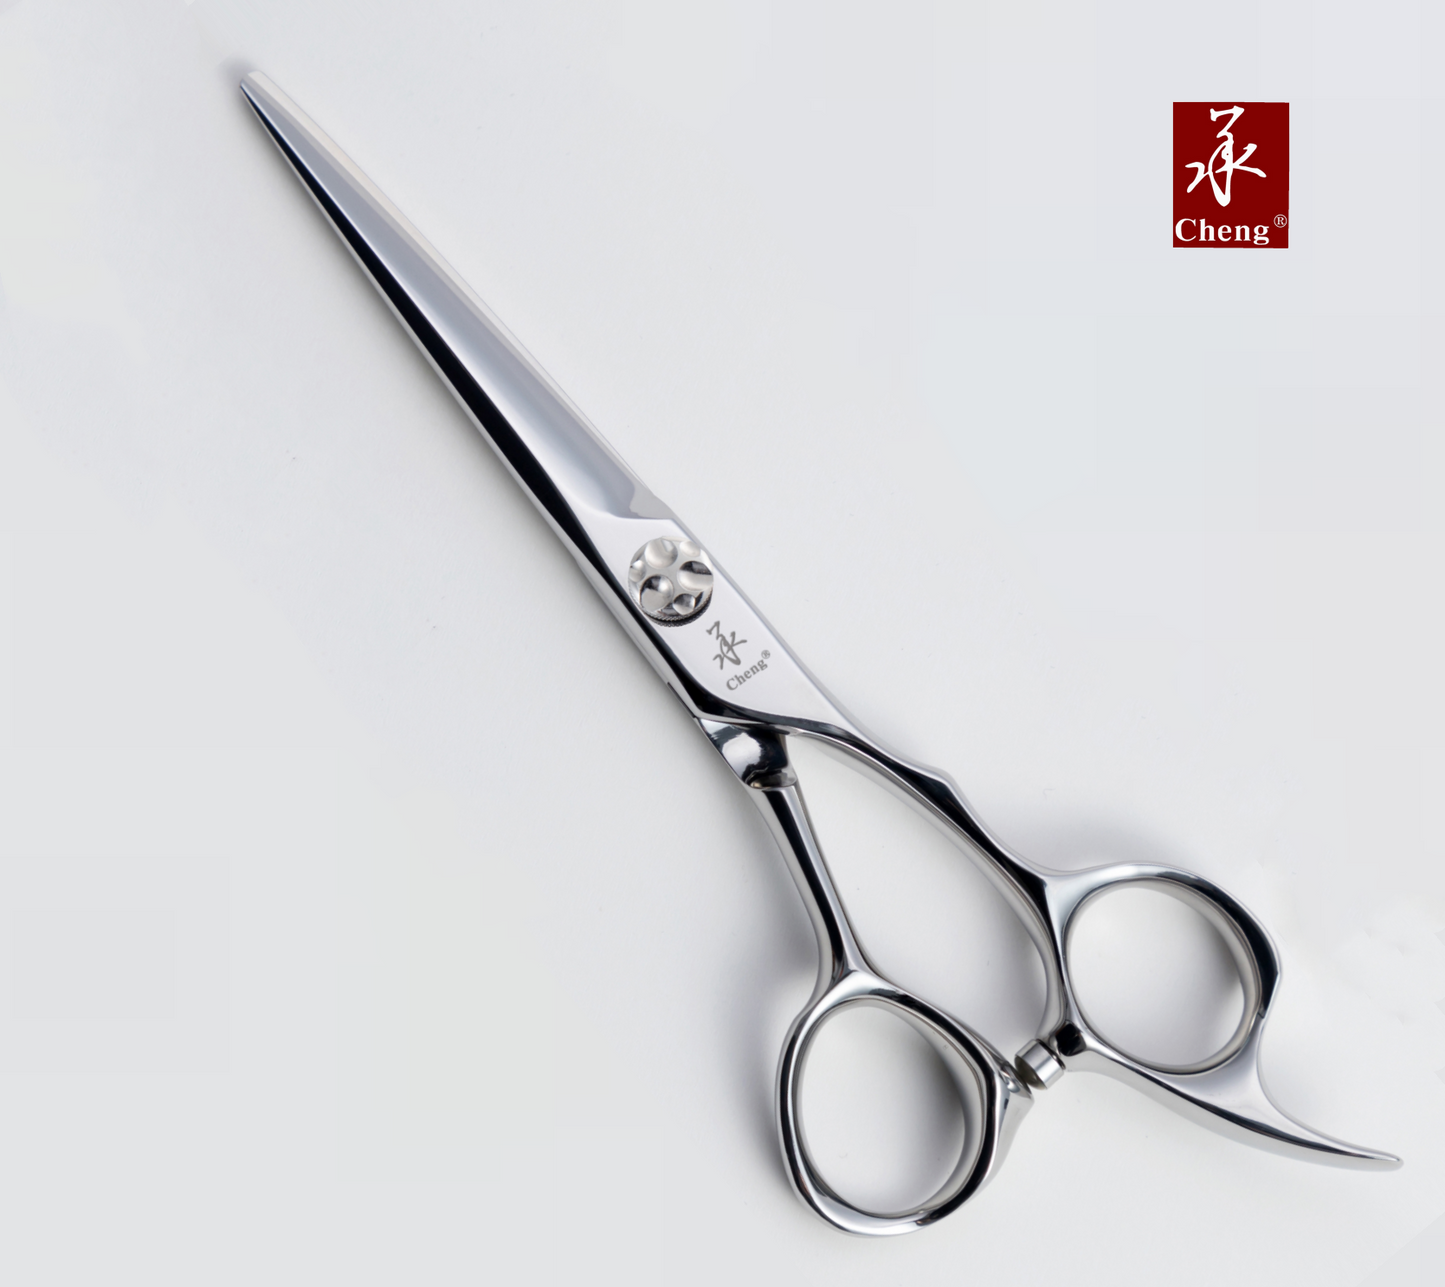 VD-70KR DLC Hair Cutting Scissors 7.0 Inch